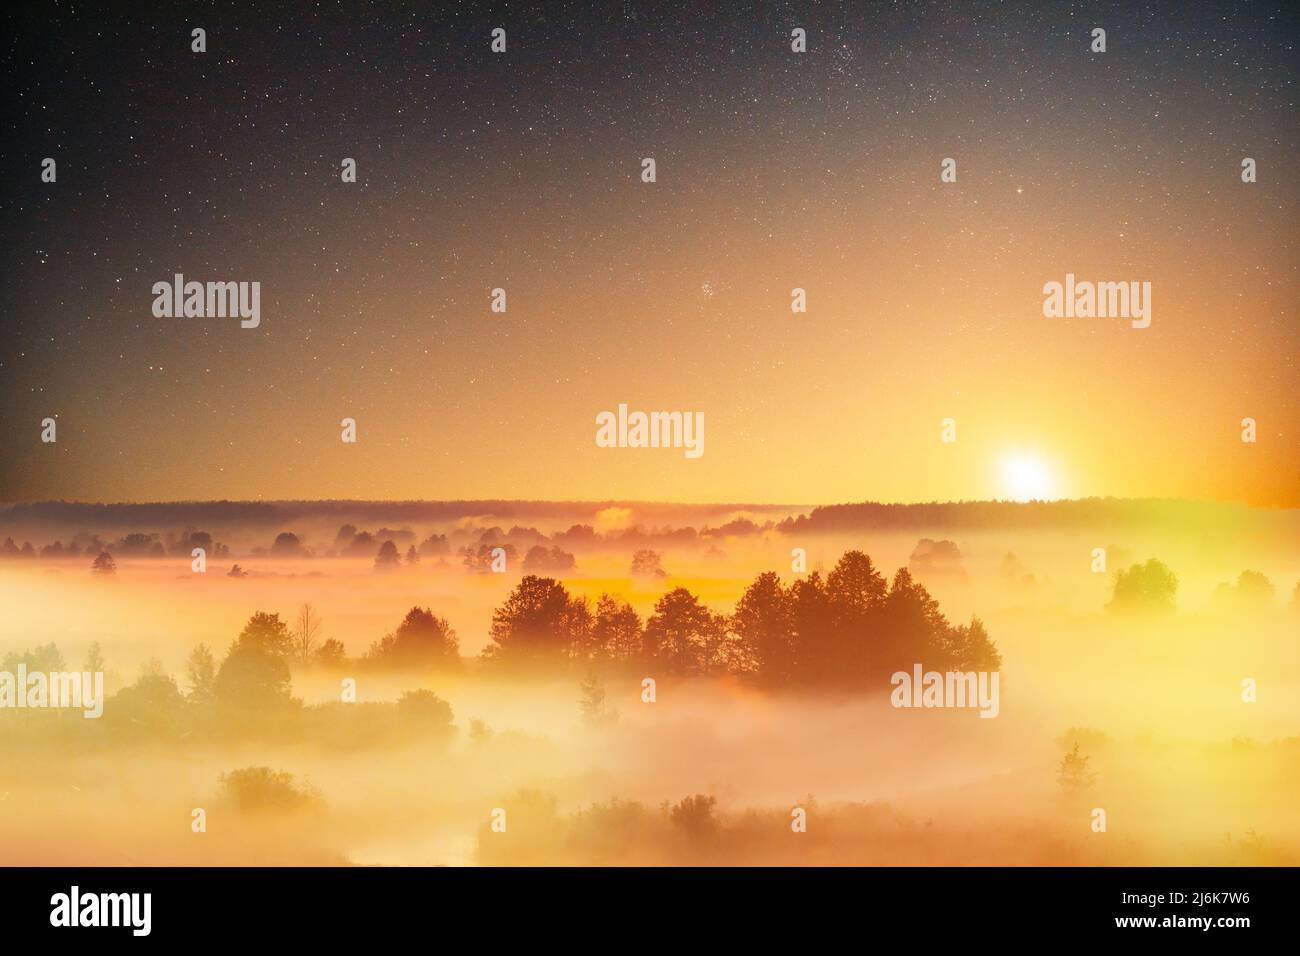 Stelle stupende cielo stellato sopra Misty nebbia Paesaggio Scenico Vista del cielo del mattino con il sole in ascesa sopra la foresta. Notte cielo stellato cielo stellato incandescente Stelle Foto Stock